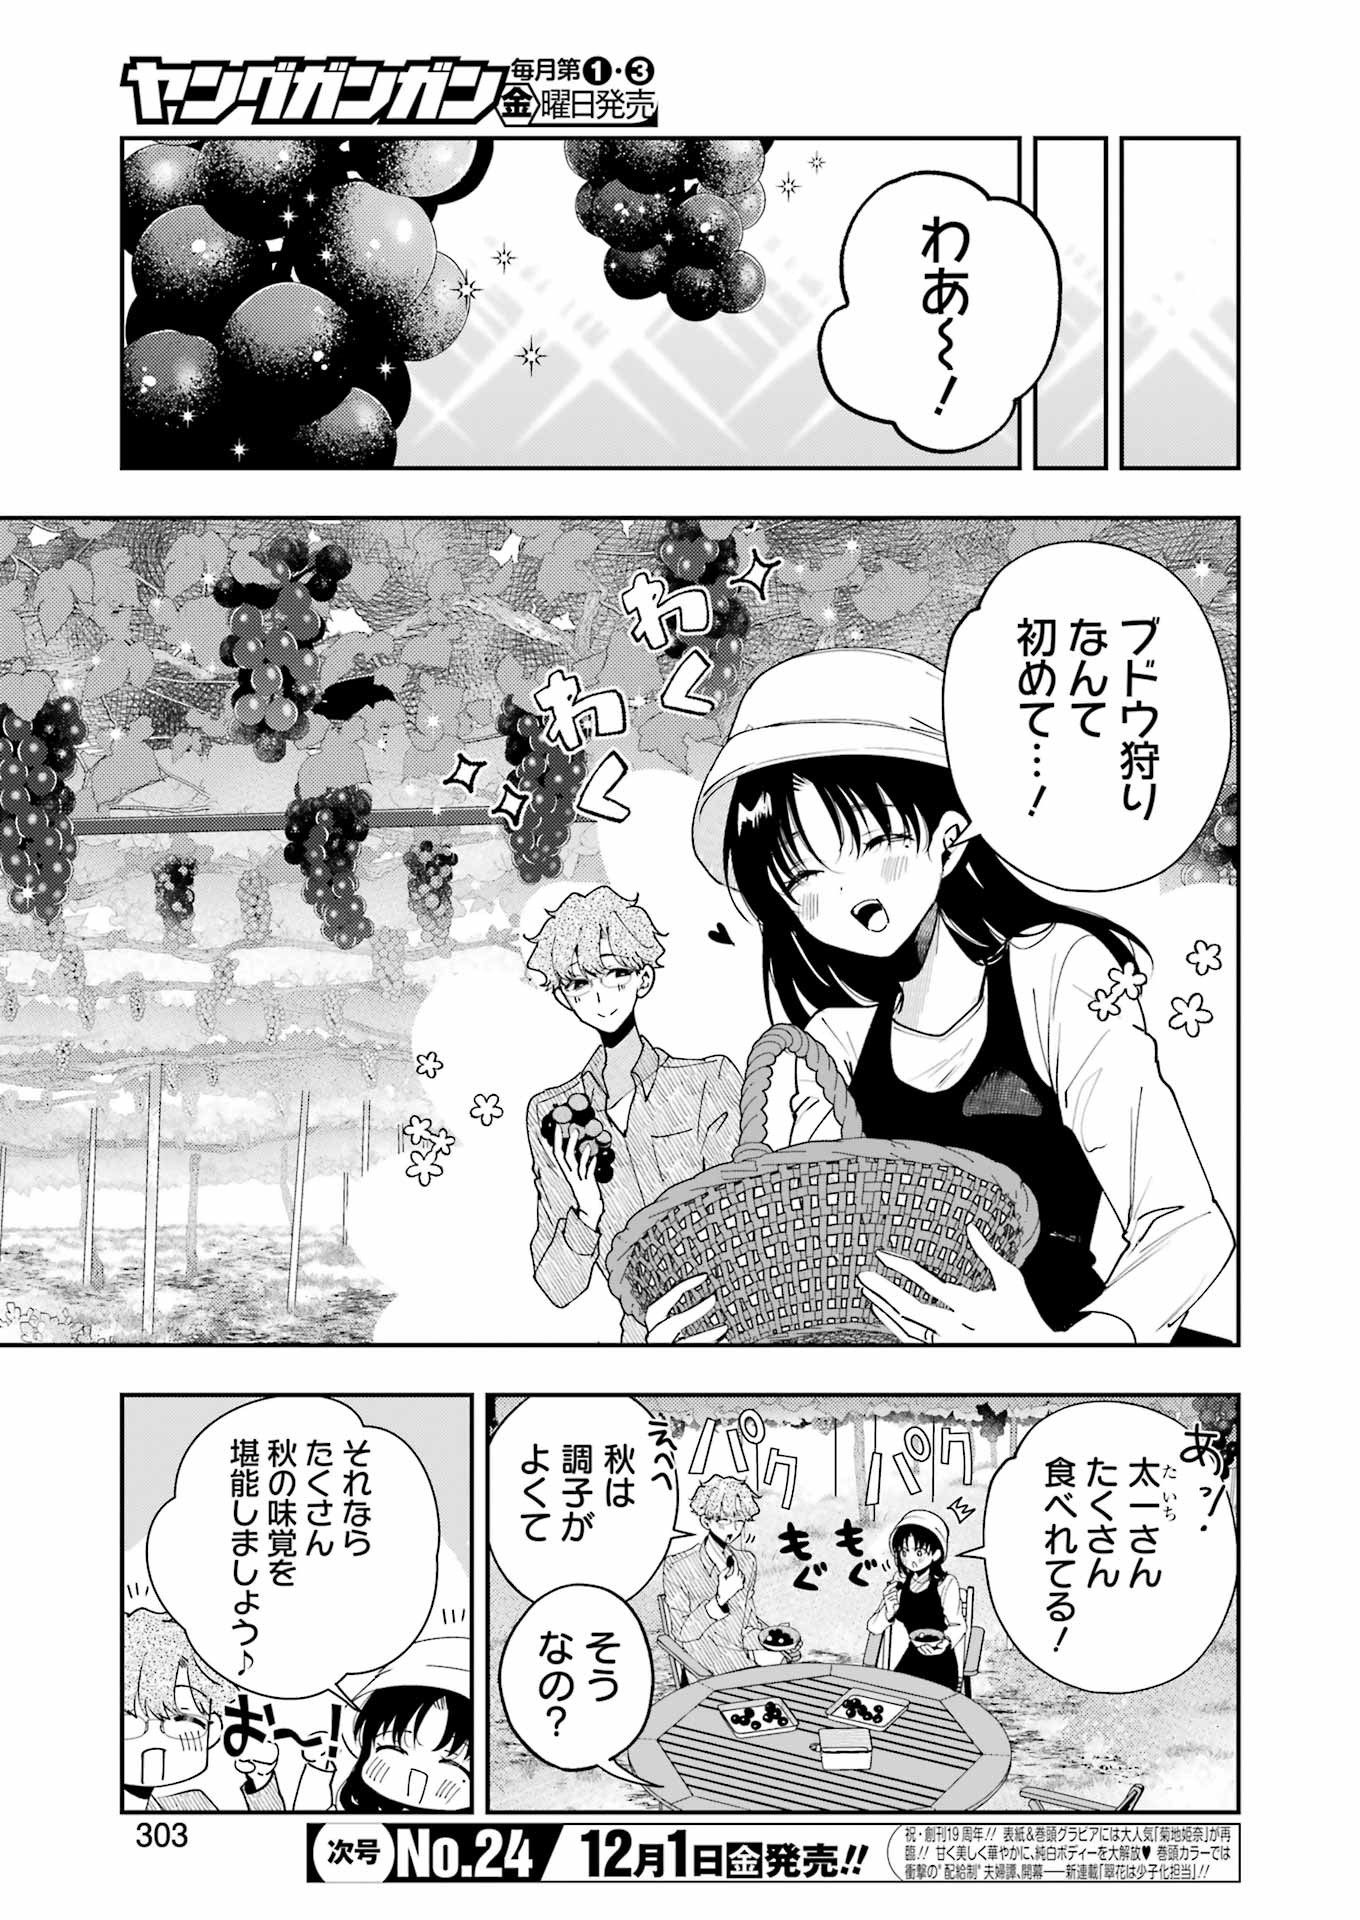 Tsuma wa Boku wo Futorasetai! - Chapter 14 - Page 3